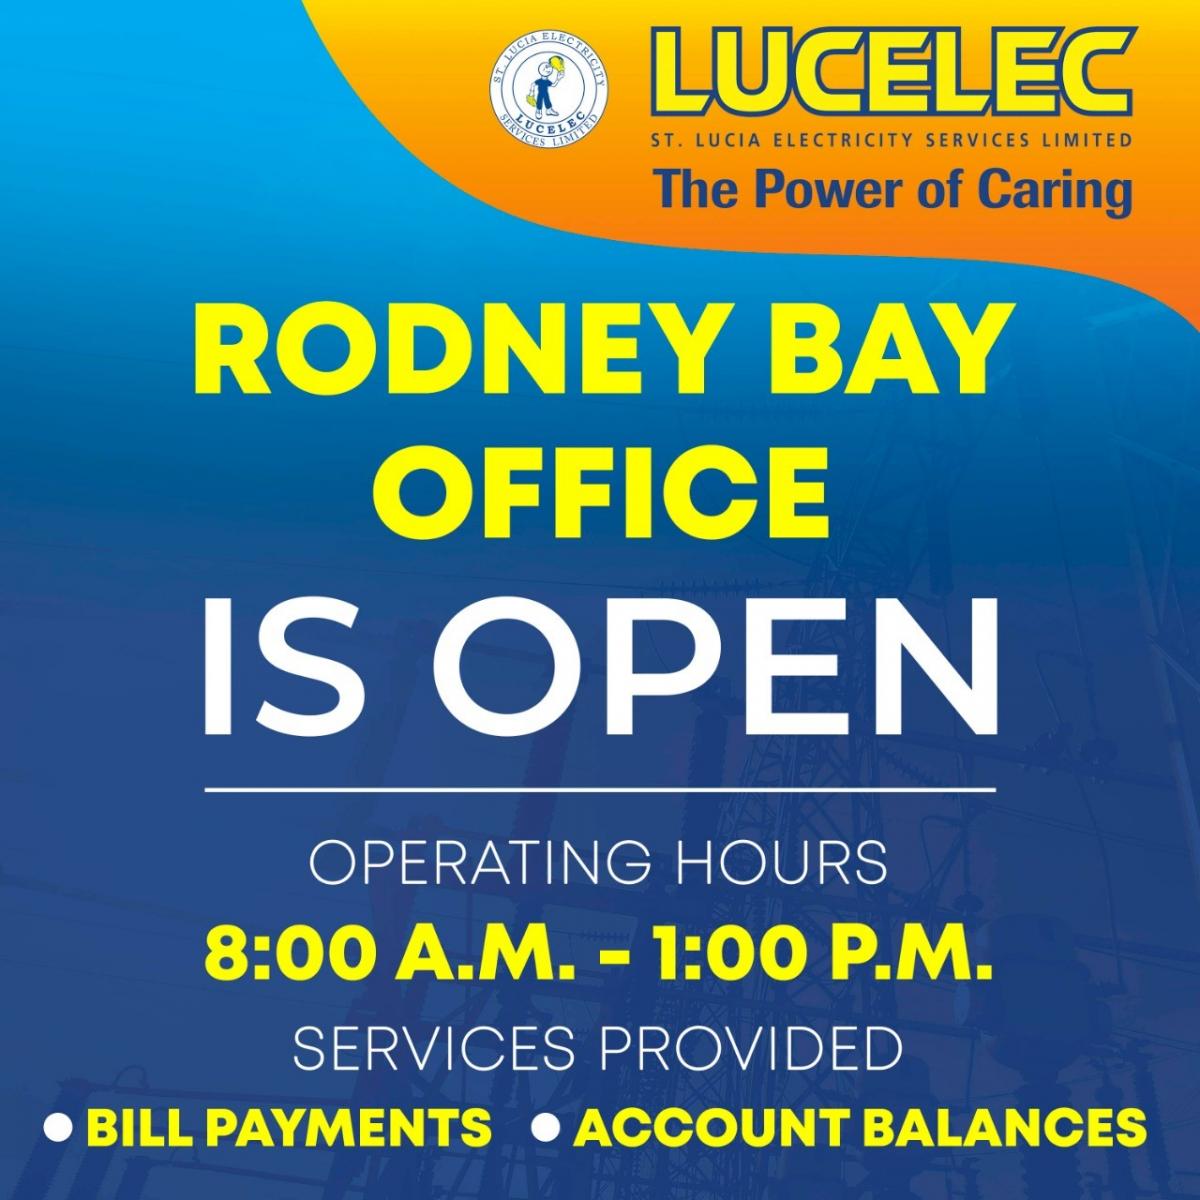 LUCELEC Rodney Bay Office is Open